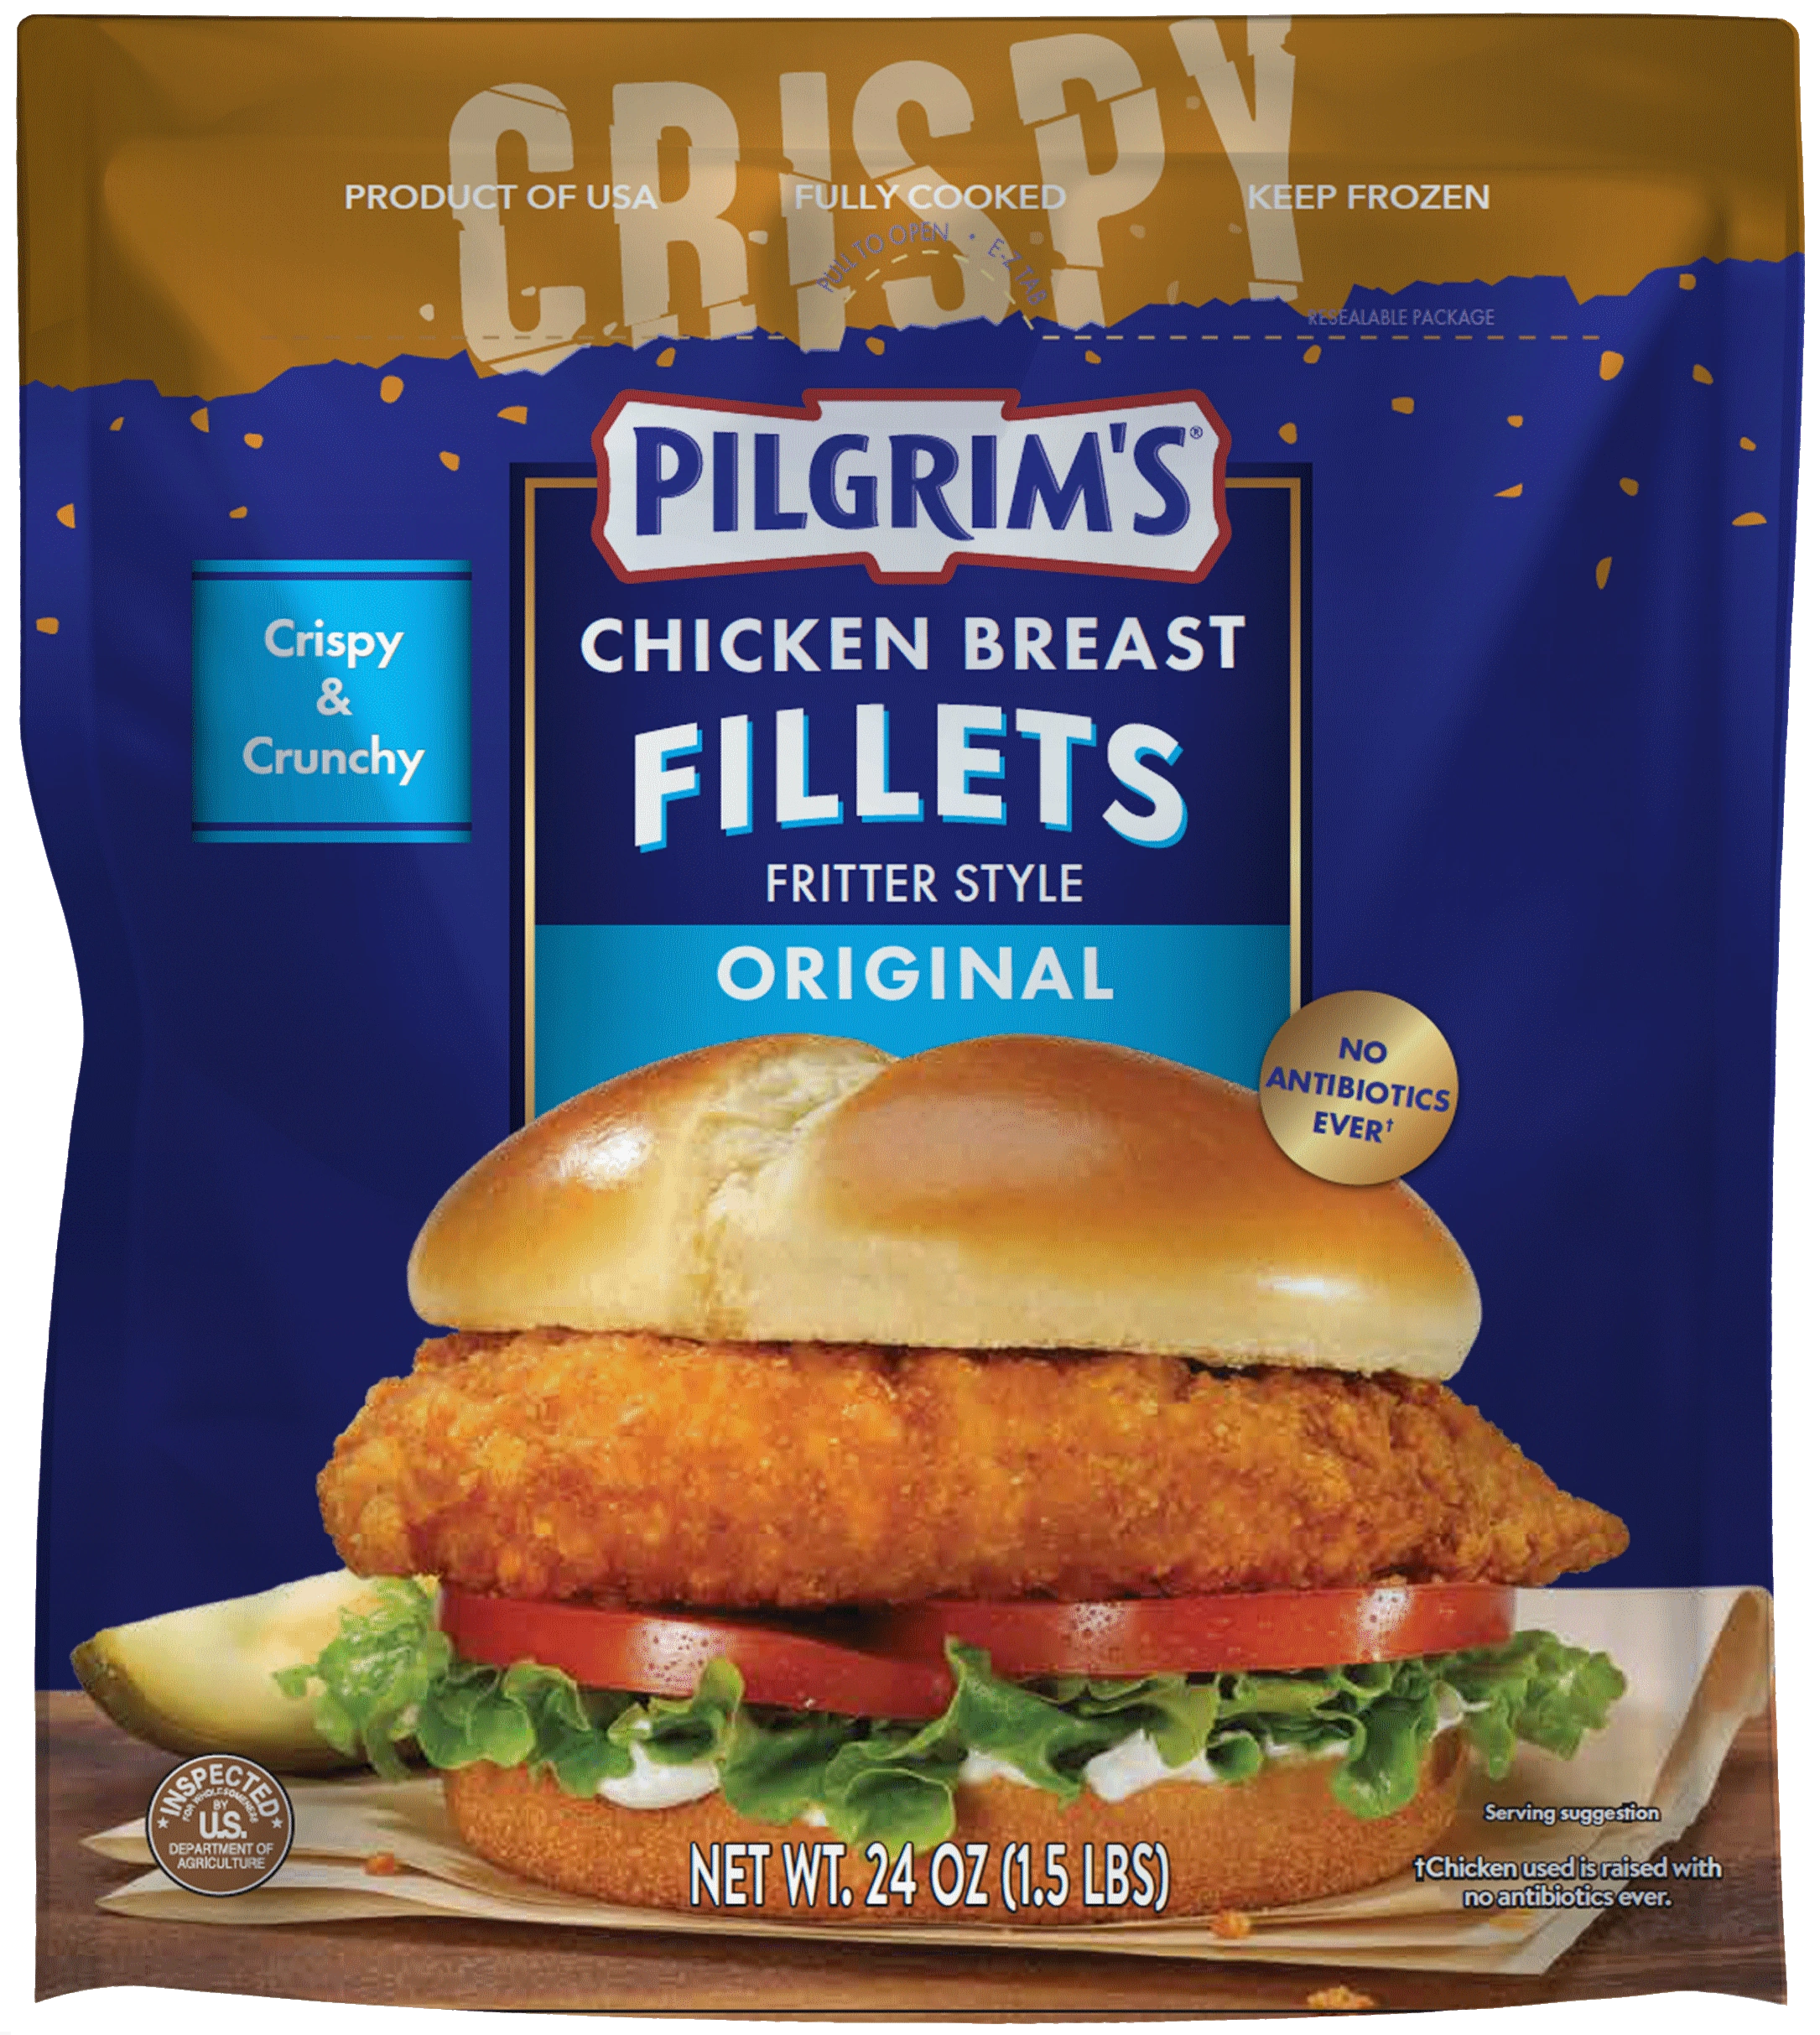 Original Chicken Breast Fillets - Pilgrims USA